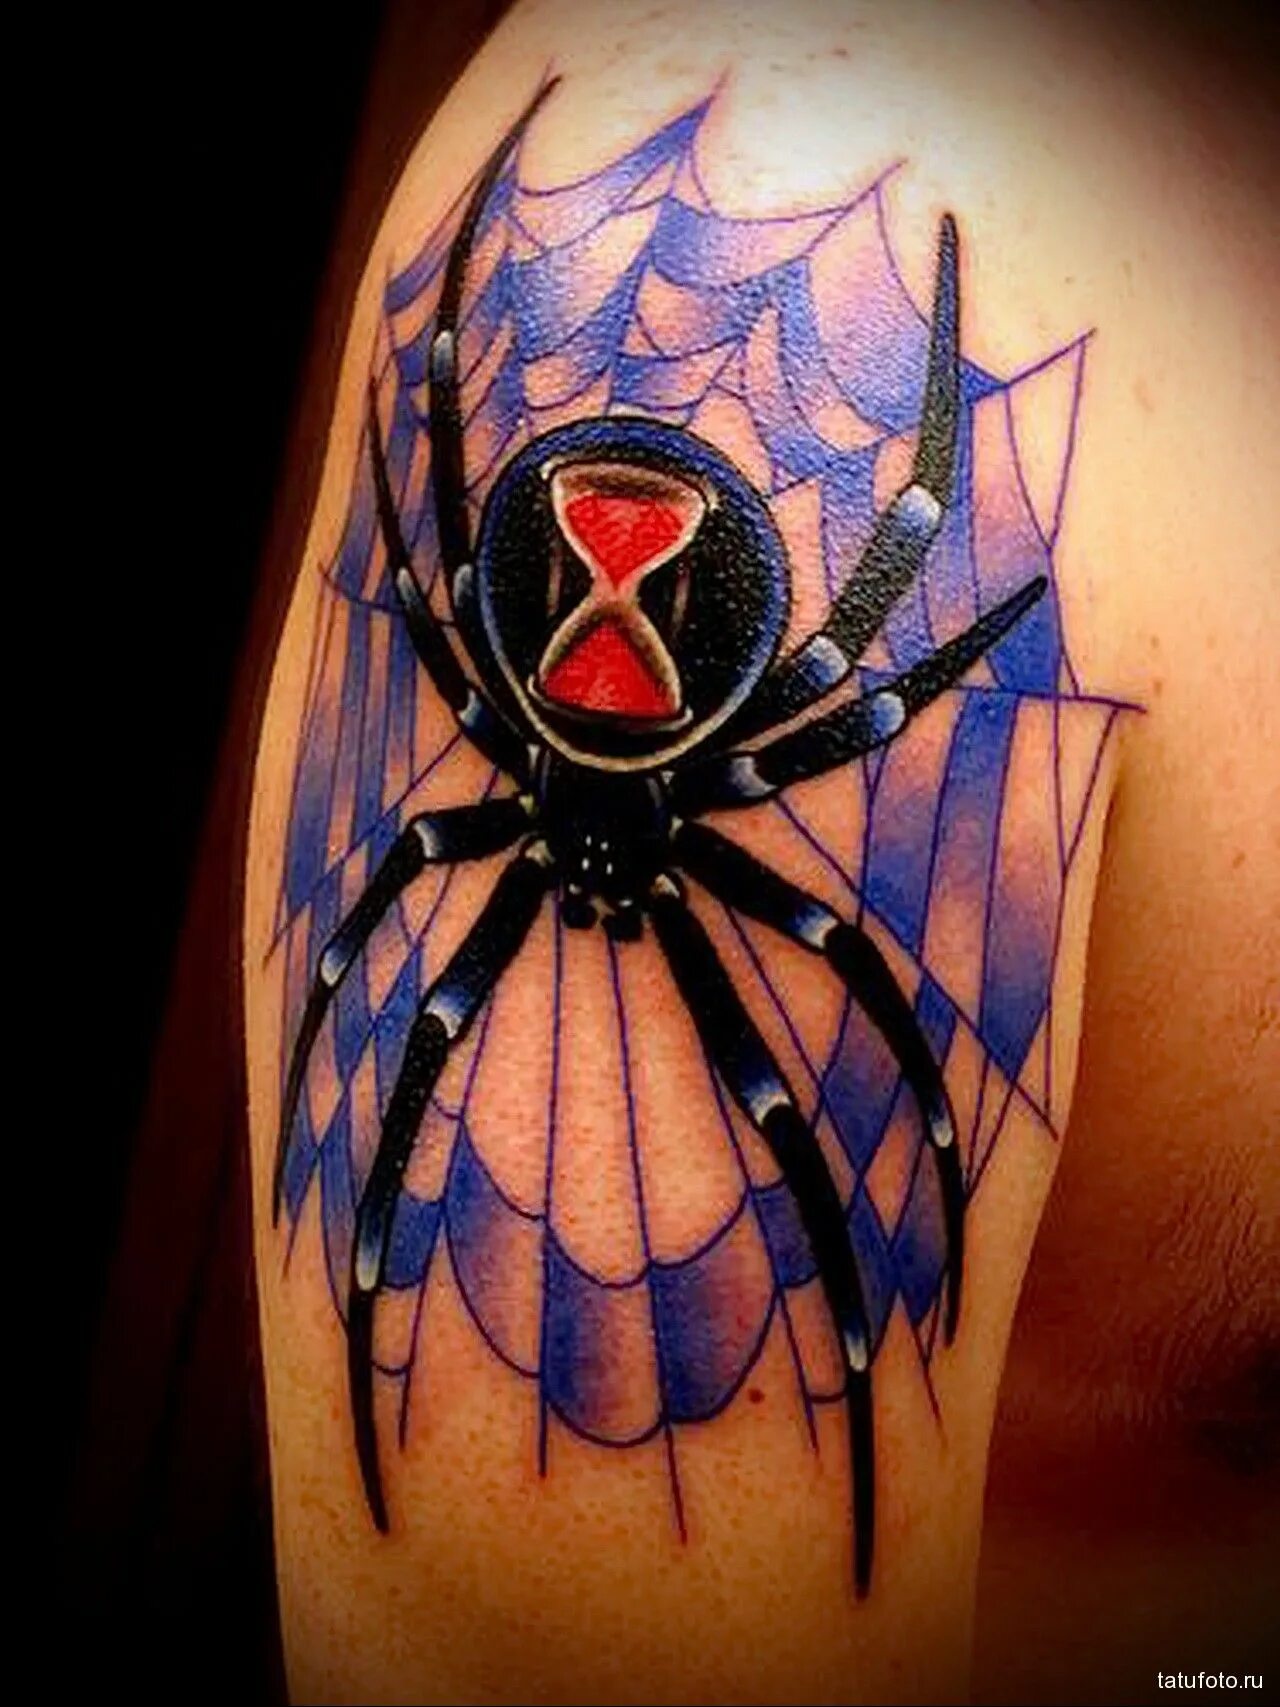 Тату паук у мужчины. Тату паук. Тату паук в паутине. Татуировка паук на плече. Тату паук цветной.